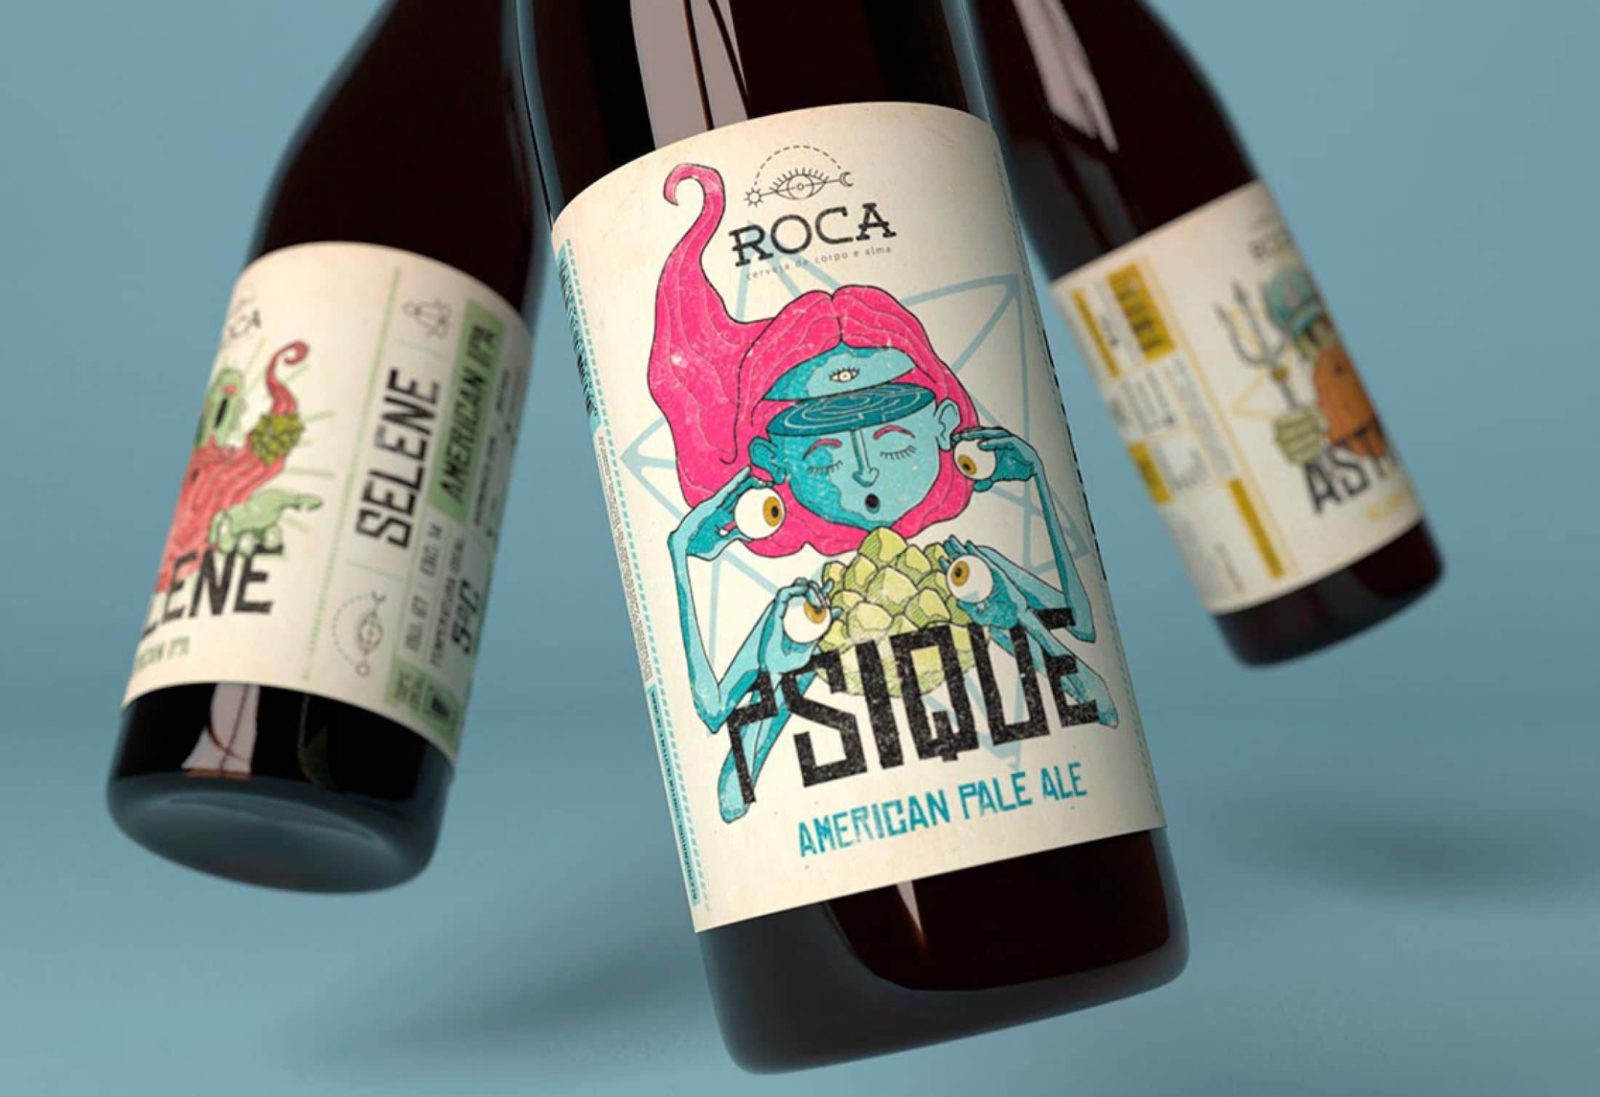 Мистический дизайн для крафтовой пивоварни Roca в Бразилии